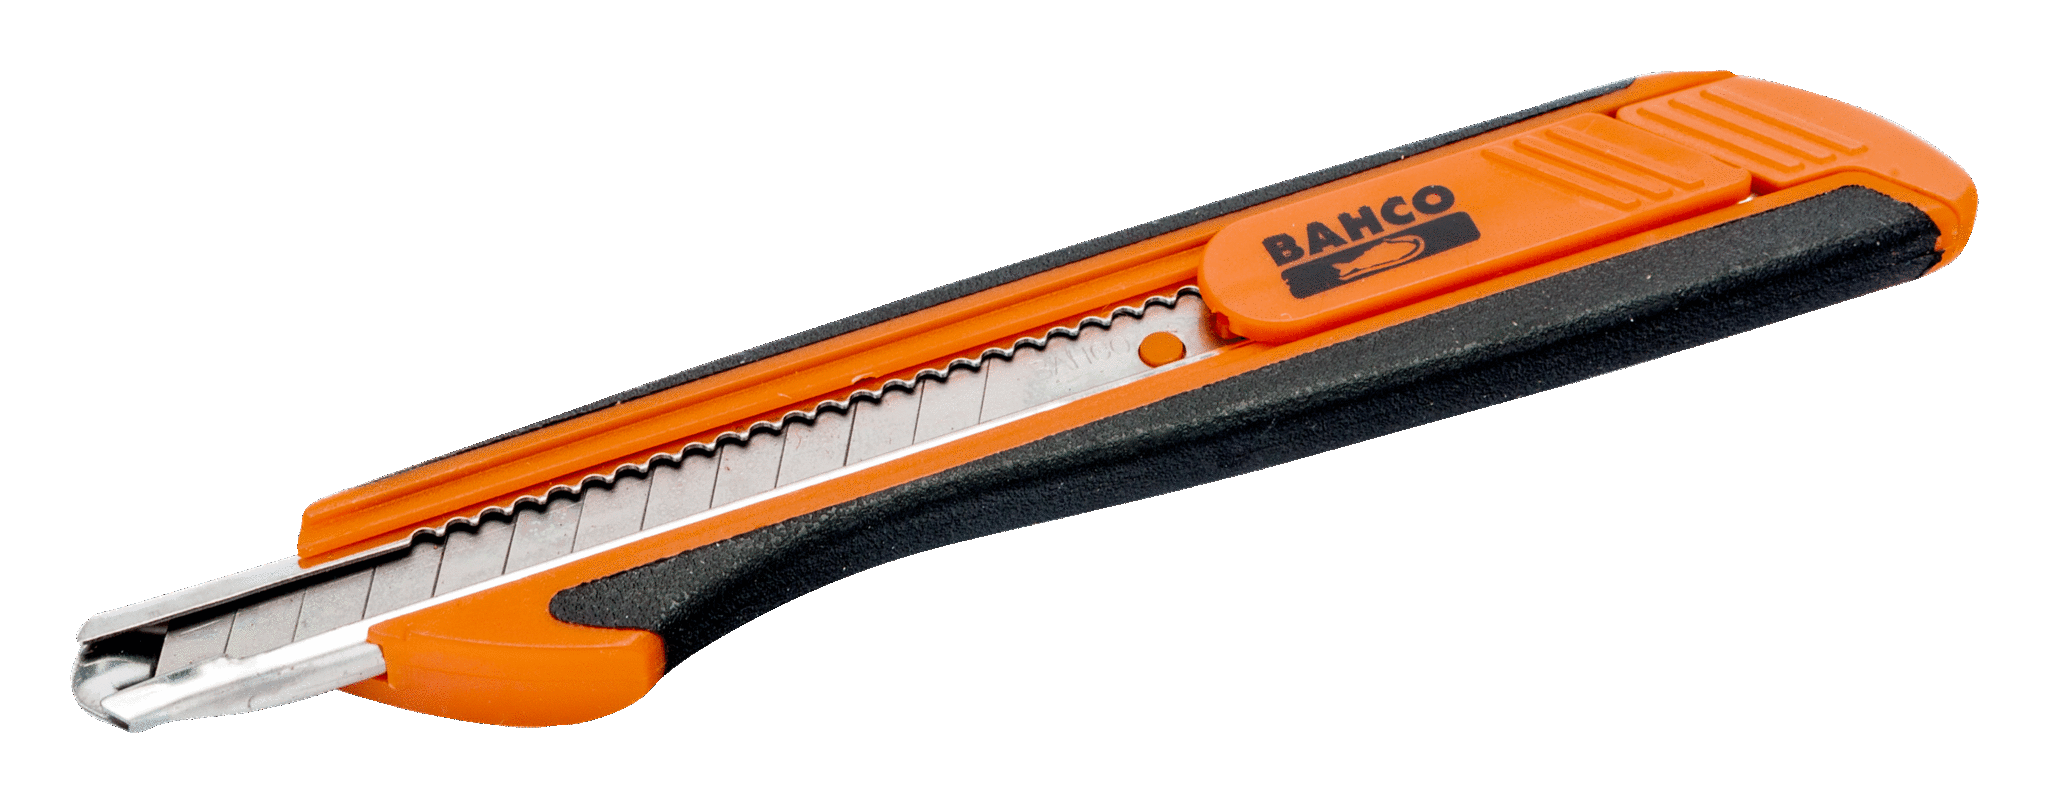 Универсальный выдвижной нож с многосекционным лезвием BAHCO KB09-01